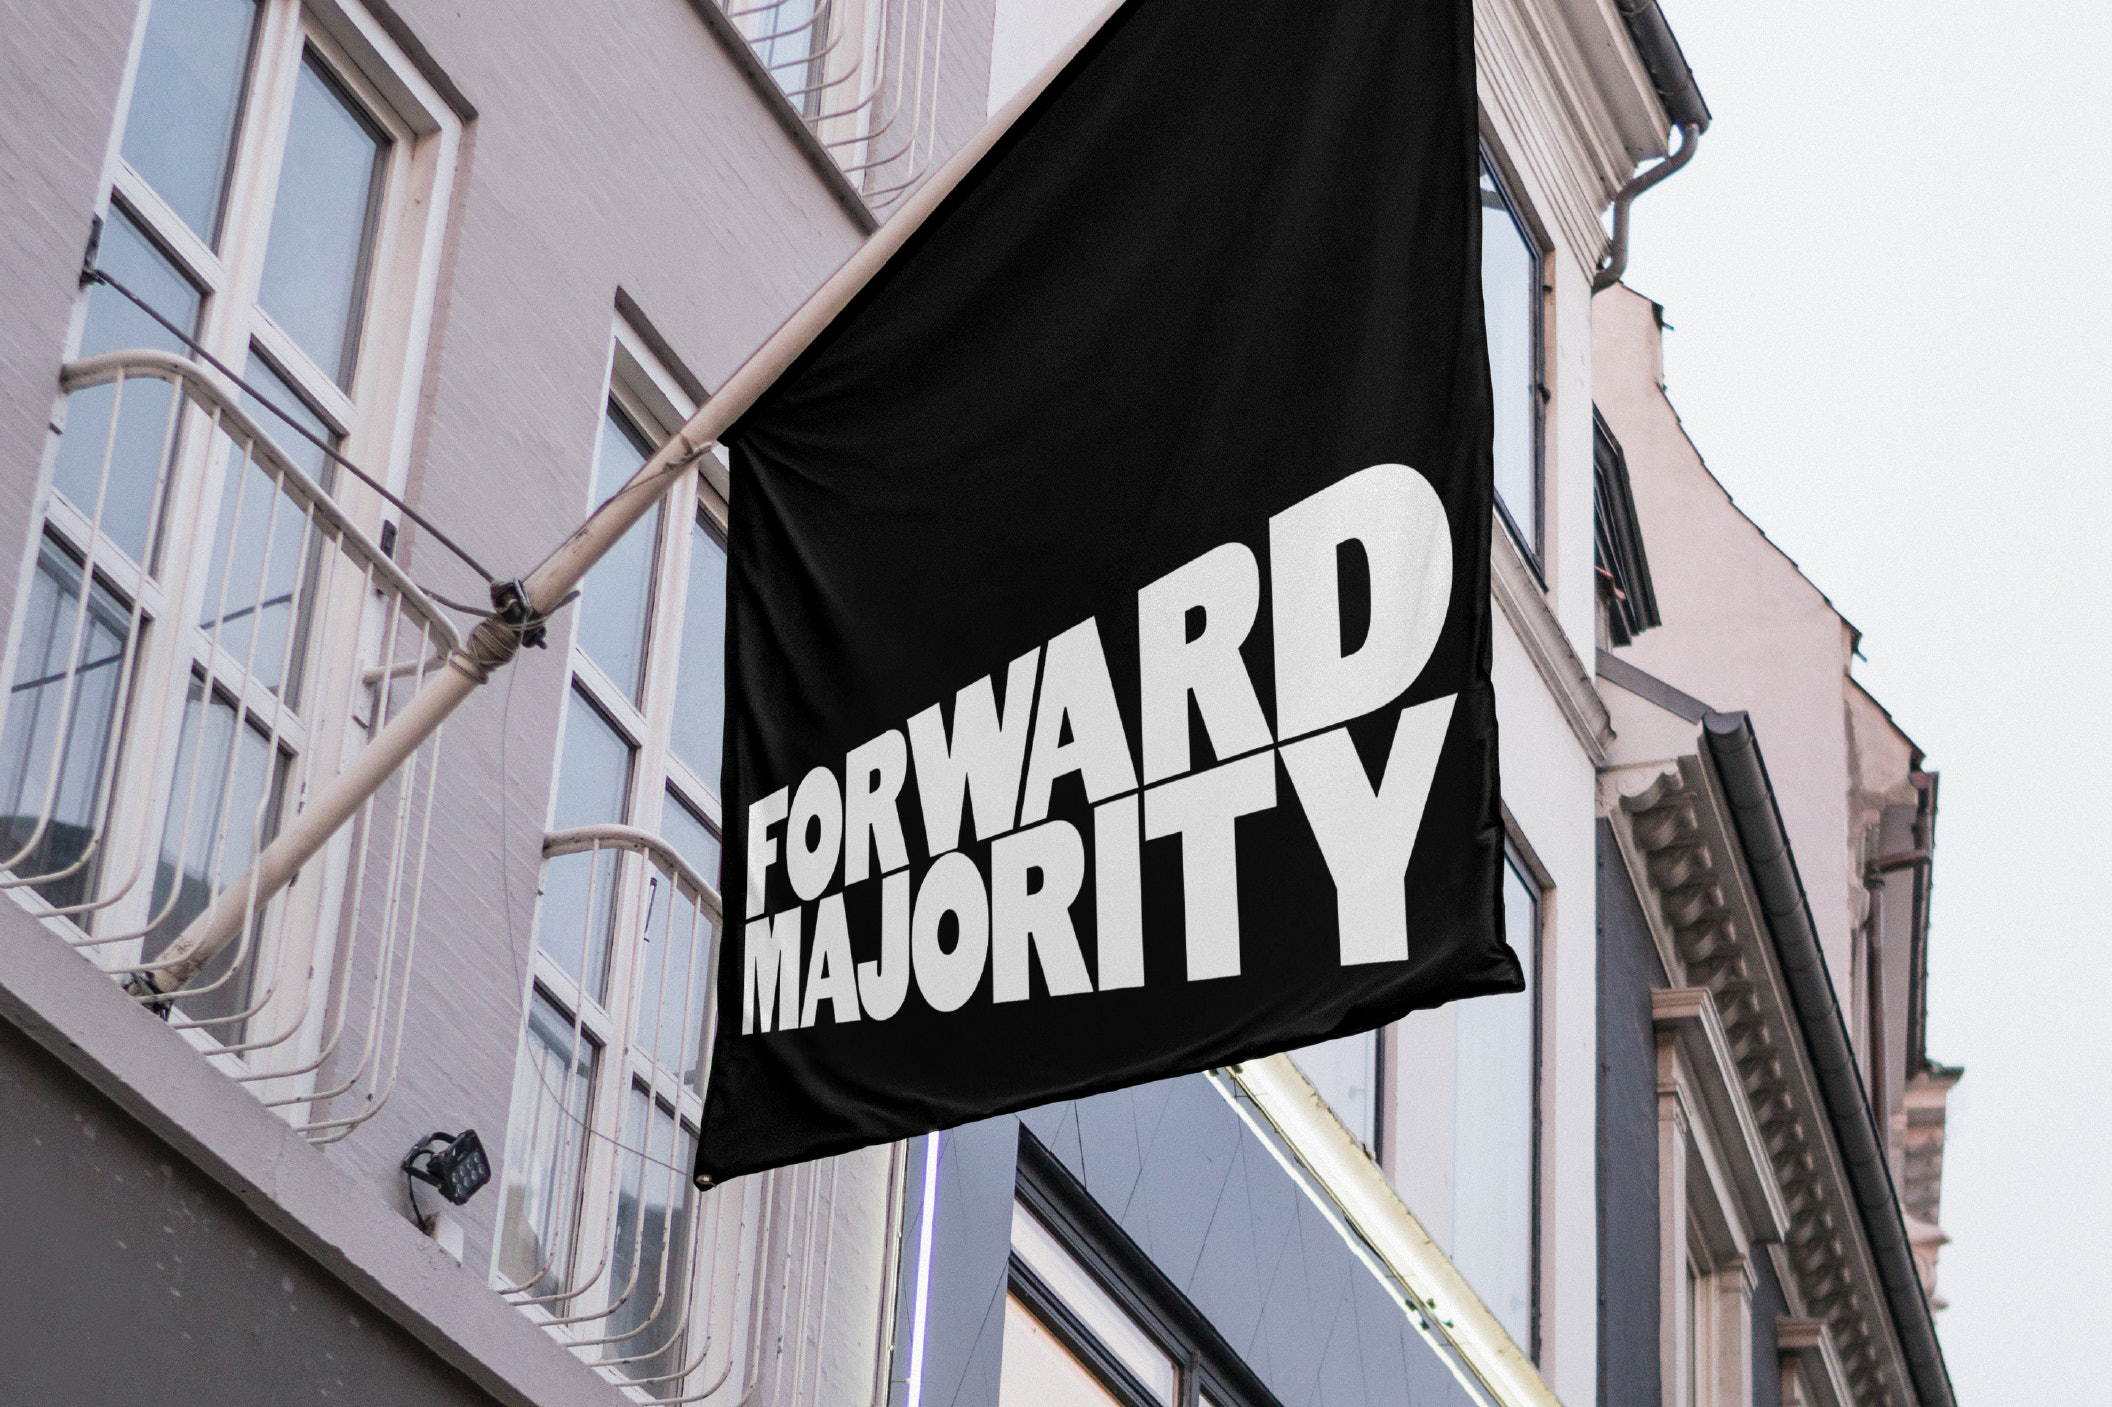 Identitas visual dan bendera untuk komite aksi politik Forward Majority dirancang oleh studio Order yang berbasis di New York